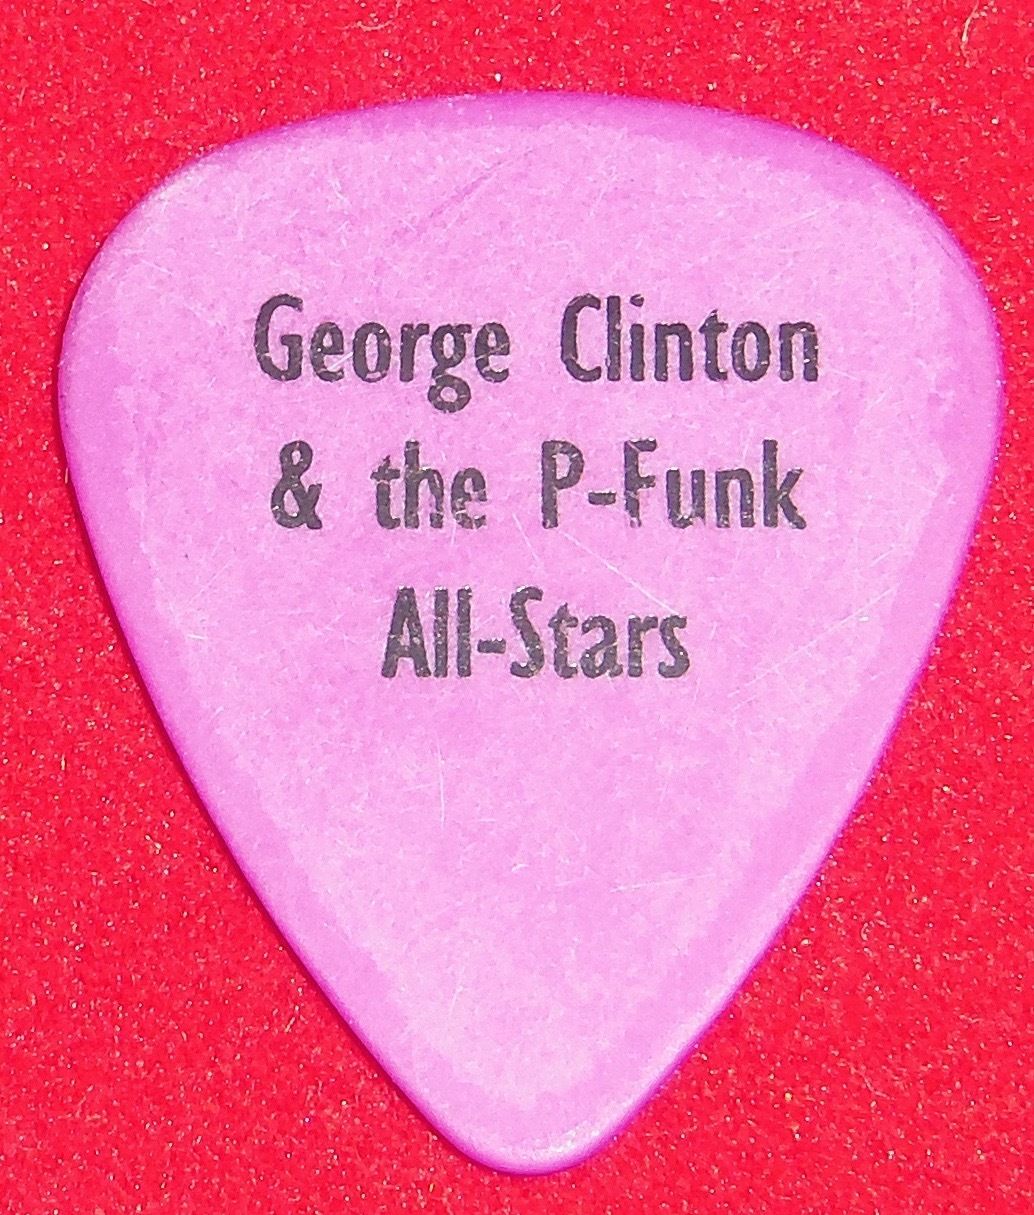 George Clinton & P Funk - Concert Tour Guitar Pick